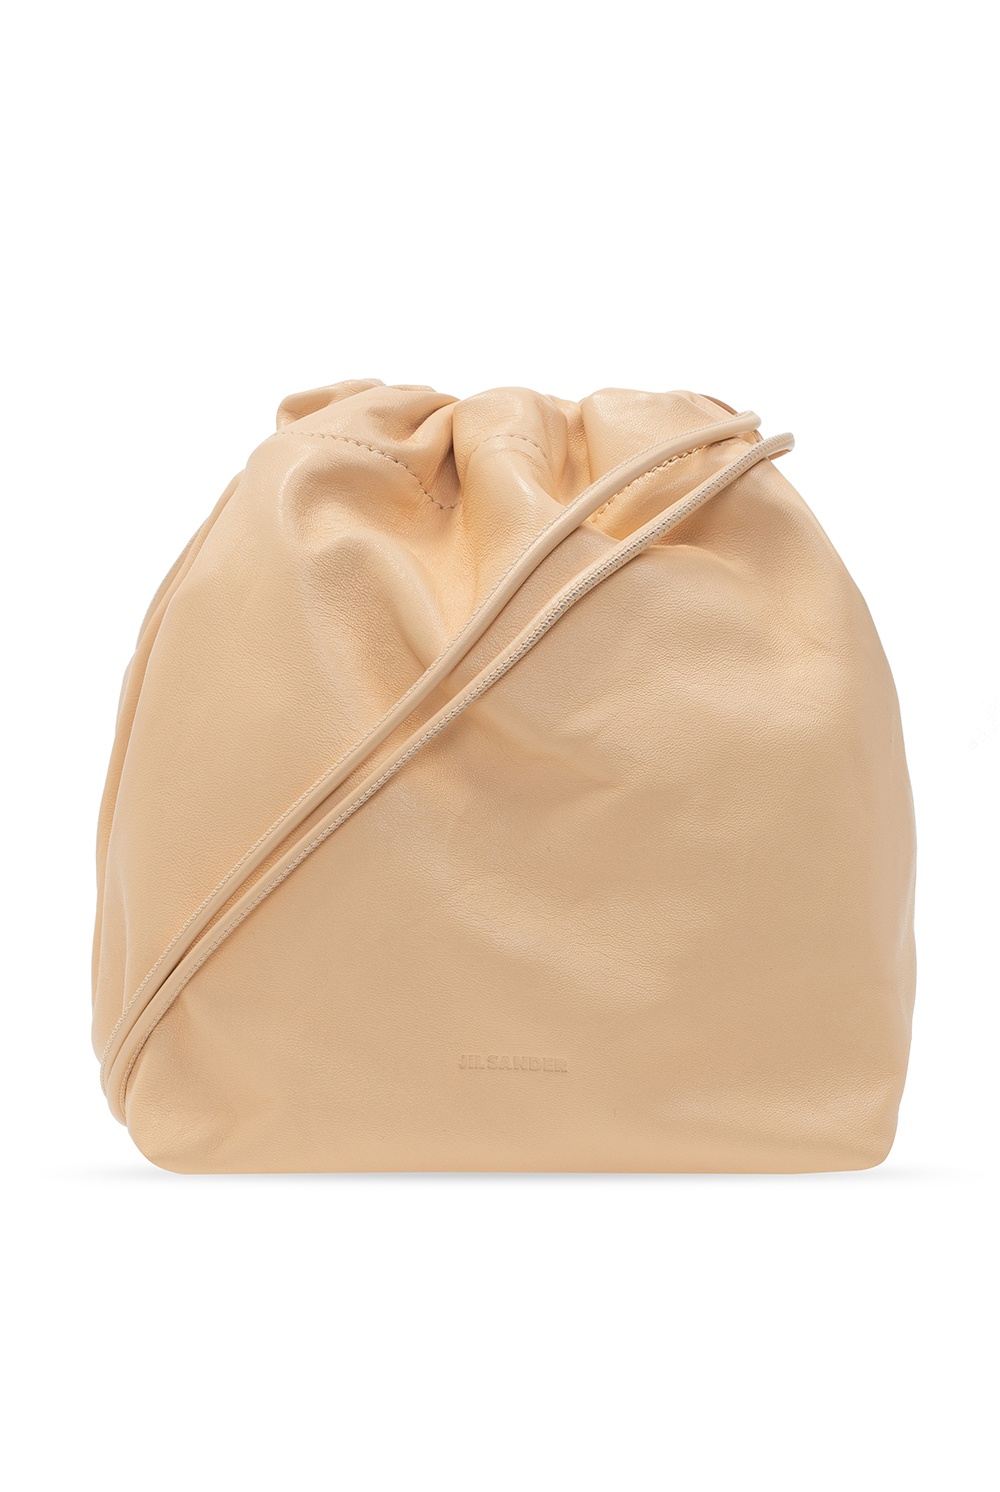 JIL SANDER 'Drawstring' shoulder bag